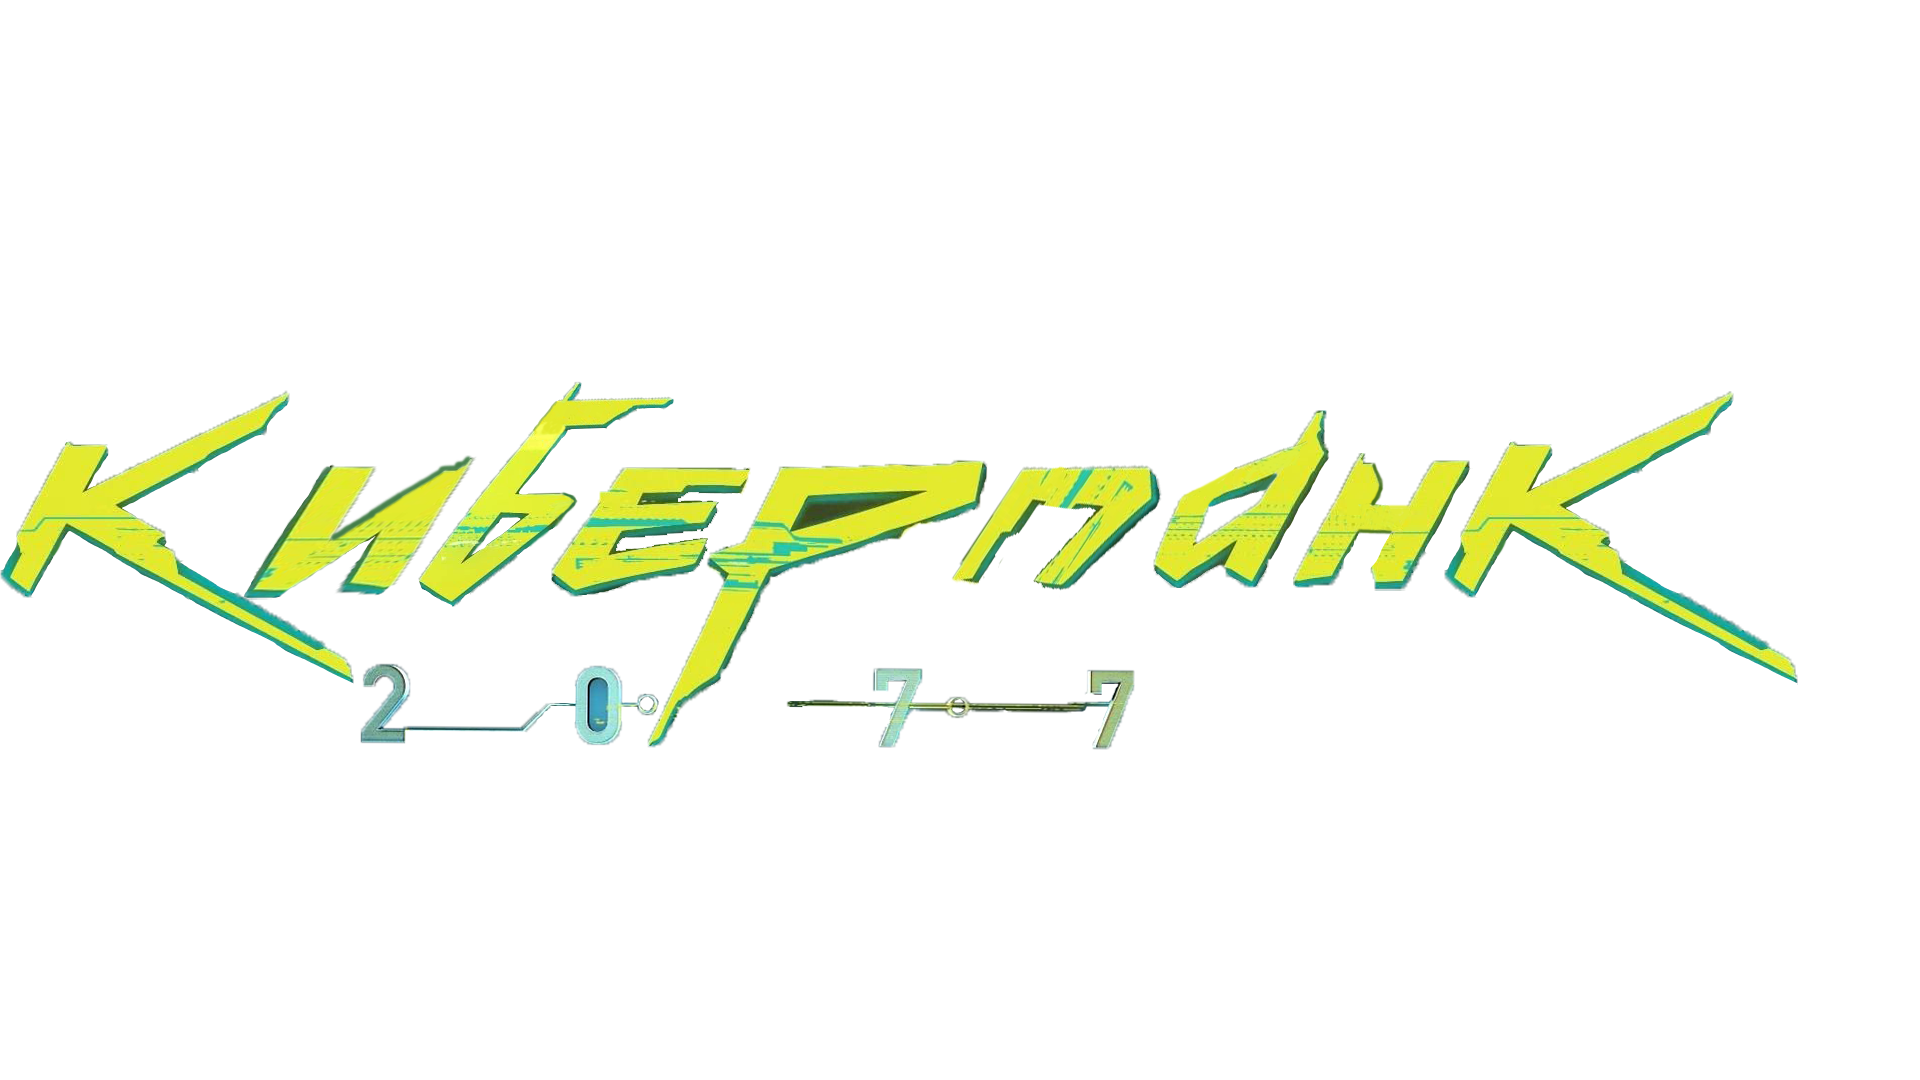 Cyberpunk_logo_rus_v1.png